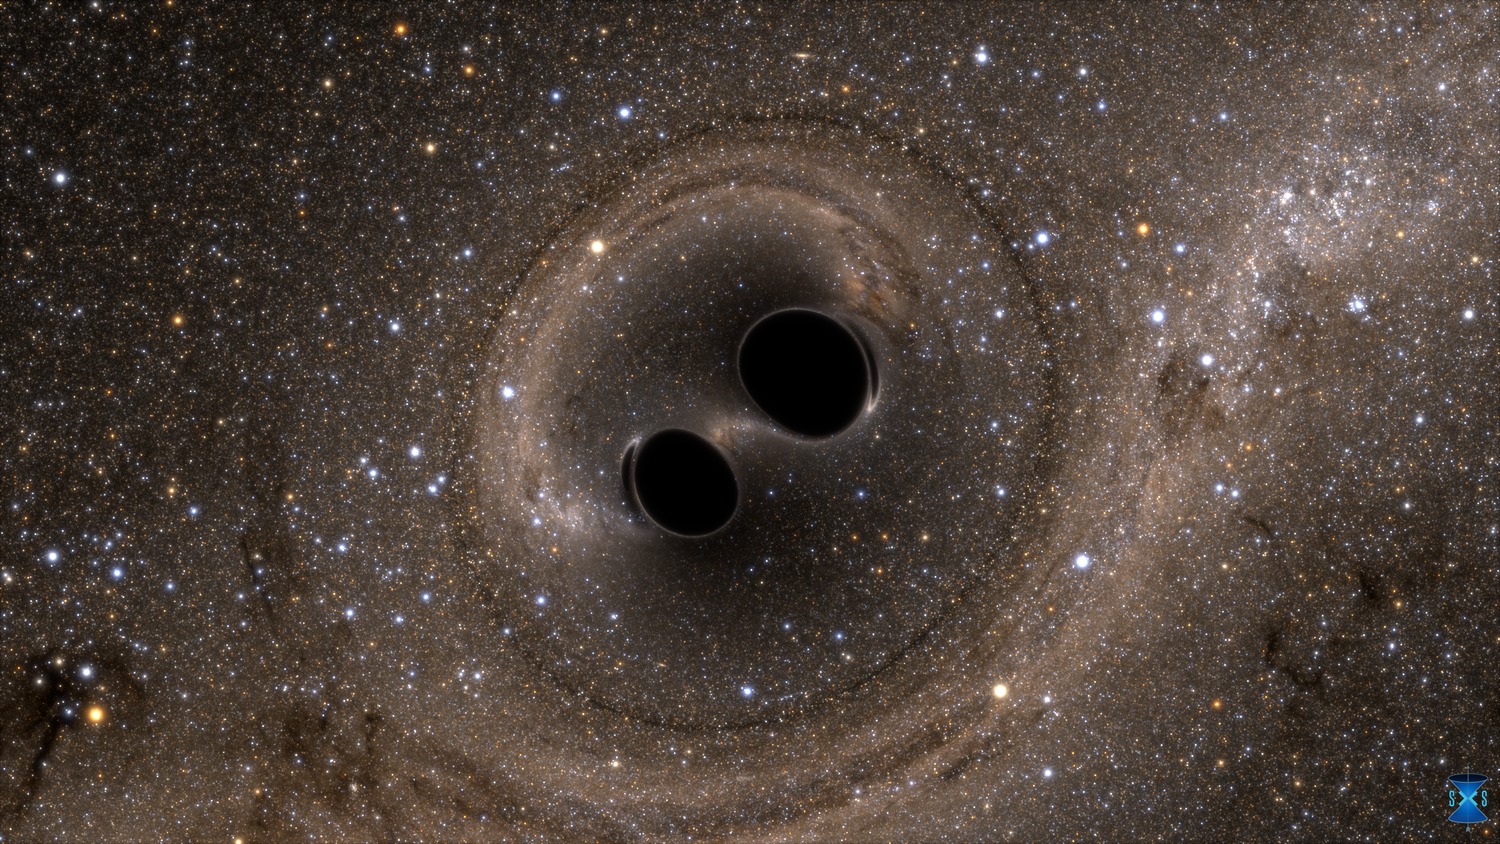 Ligo (Laser Interferometer Gravitational-Wave Observatory) a permis de détecter l'onde gravitationnelle produite par la collision puis la fusion de deux trous noirs d'environ 30 masses solaires chacun. Mais à quoi aurait ressemblé visuellement l'évènement pour des observateur installés à quelques milliers de kilomètres ? Des simulations numériques permettent de le découvrir. Cette image, qui illustre des effets de lentille gravitationnelle, est extraite de l'une d'elles. © SXS (Simulating eXtreme Spacetimes project)